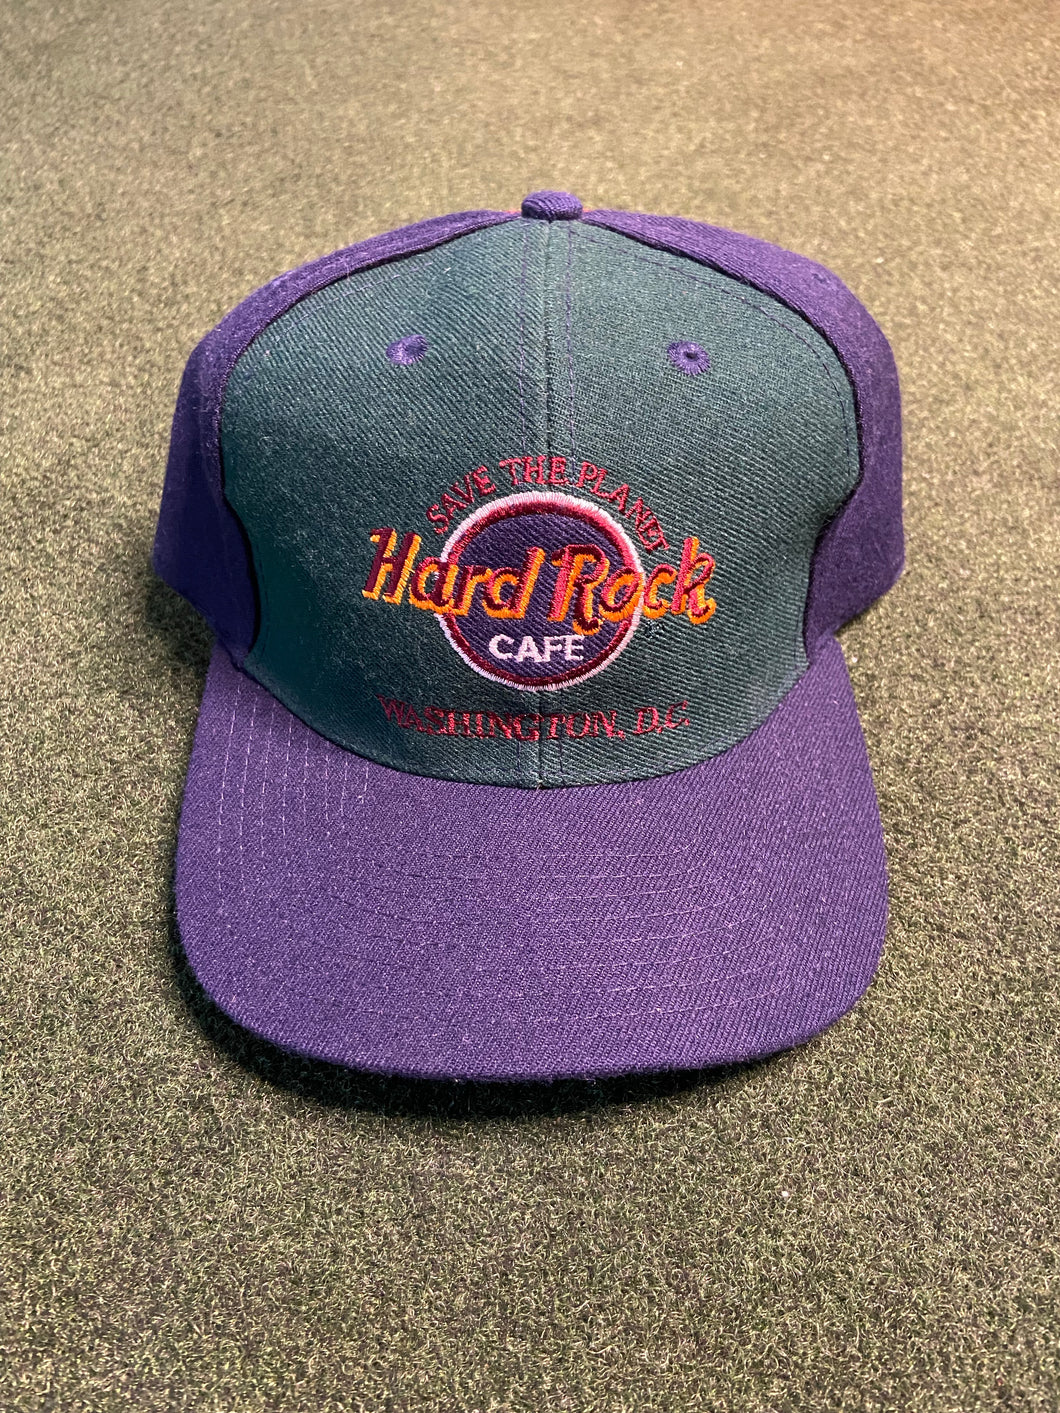 Vintage “Hard Rock Cafe - Washington DC” Snapback